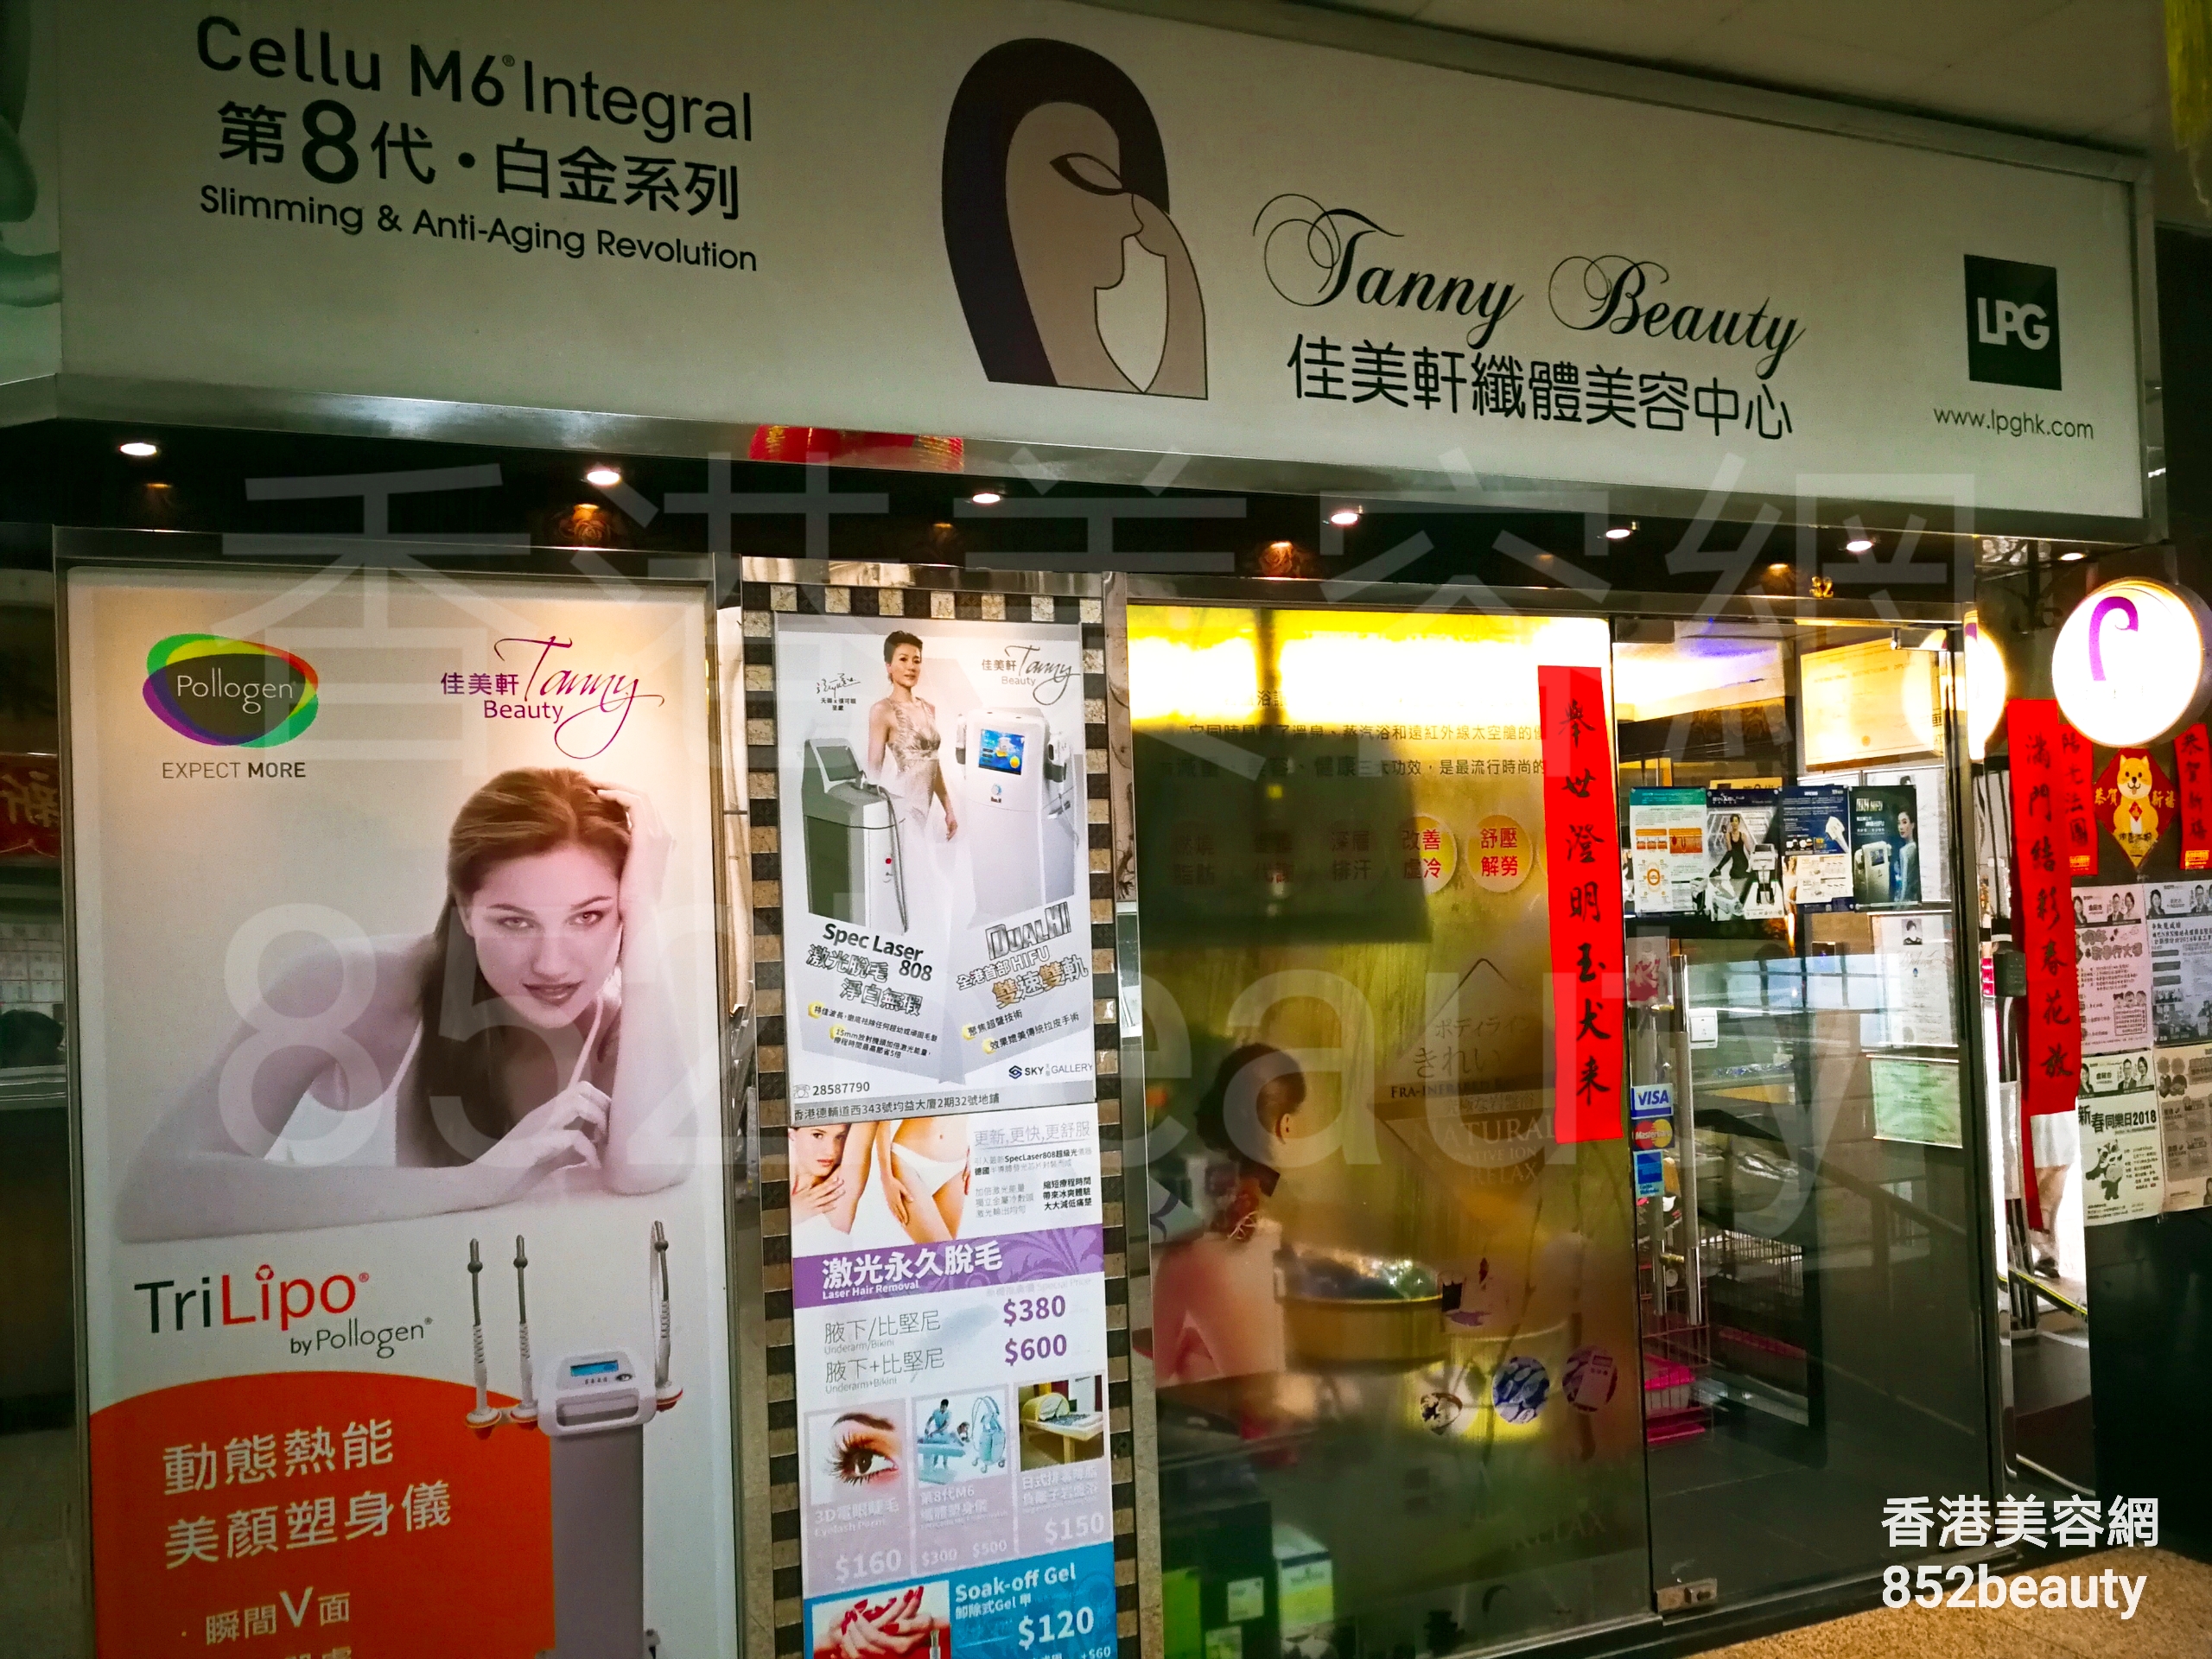 香港美容網 Hong Kong Beauty Salon 美容院 / 美容師: 佳美軒織體美容中心